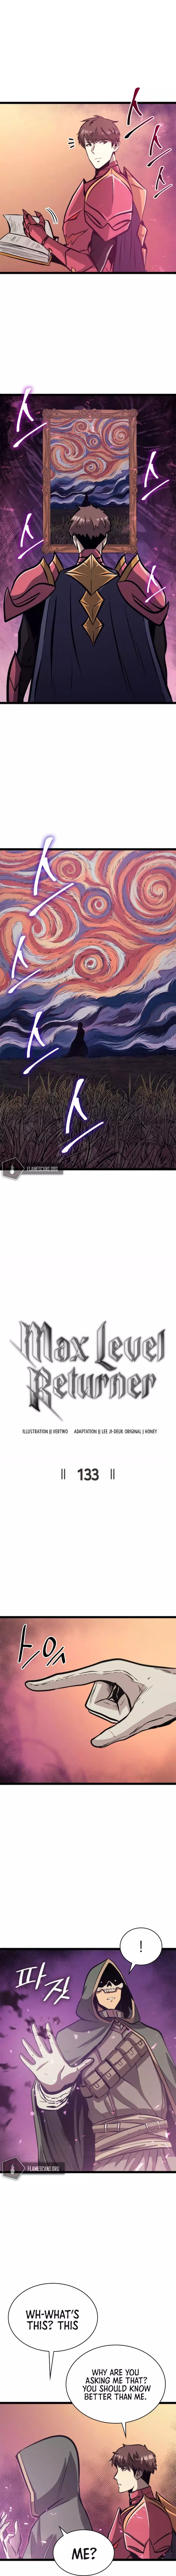 Max Level Returner - 133 page 4-2c60478c